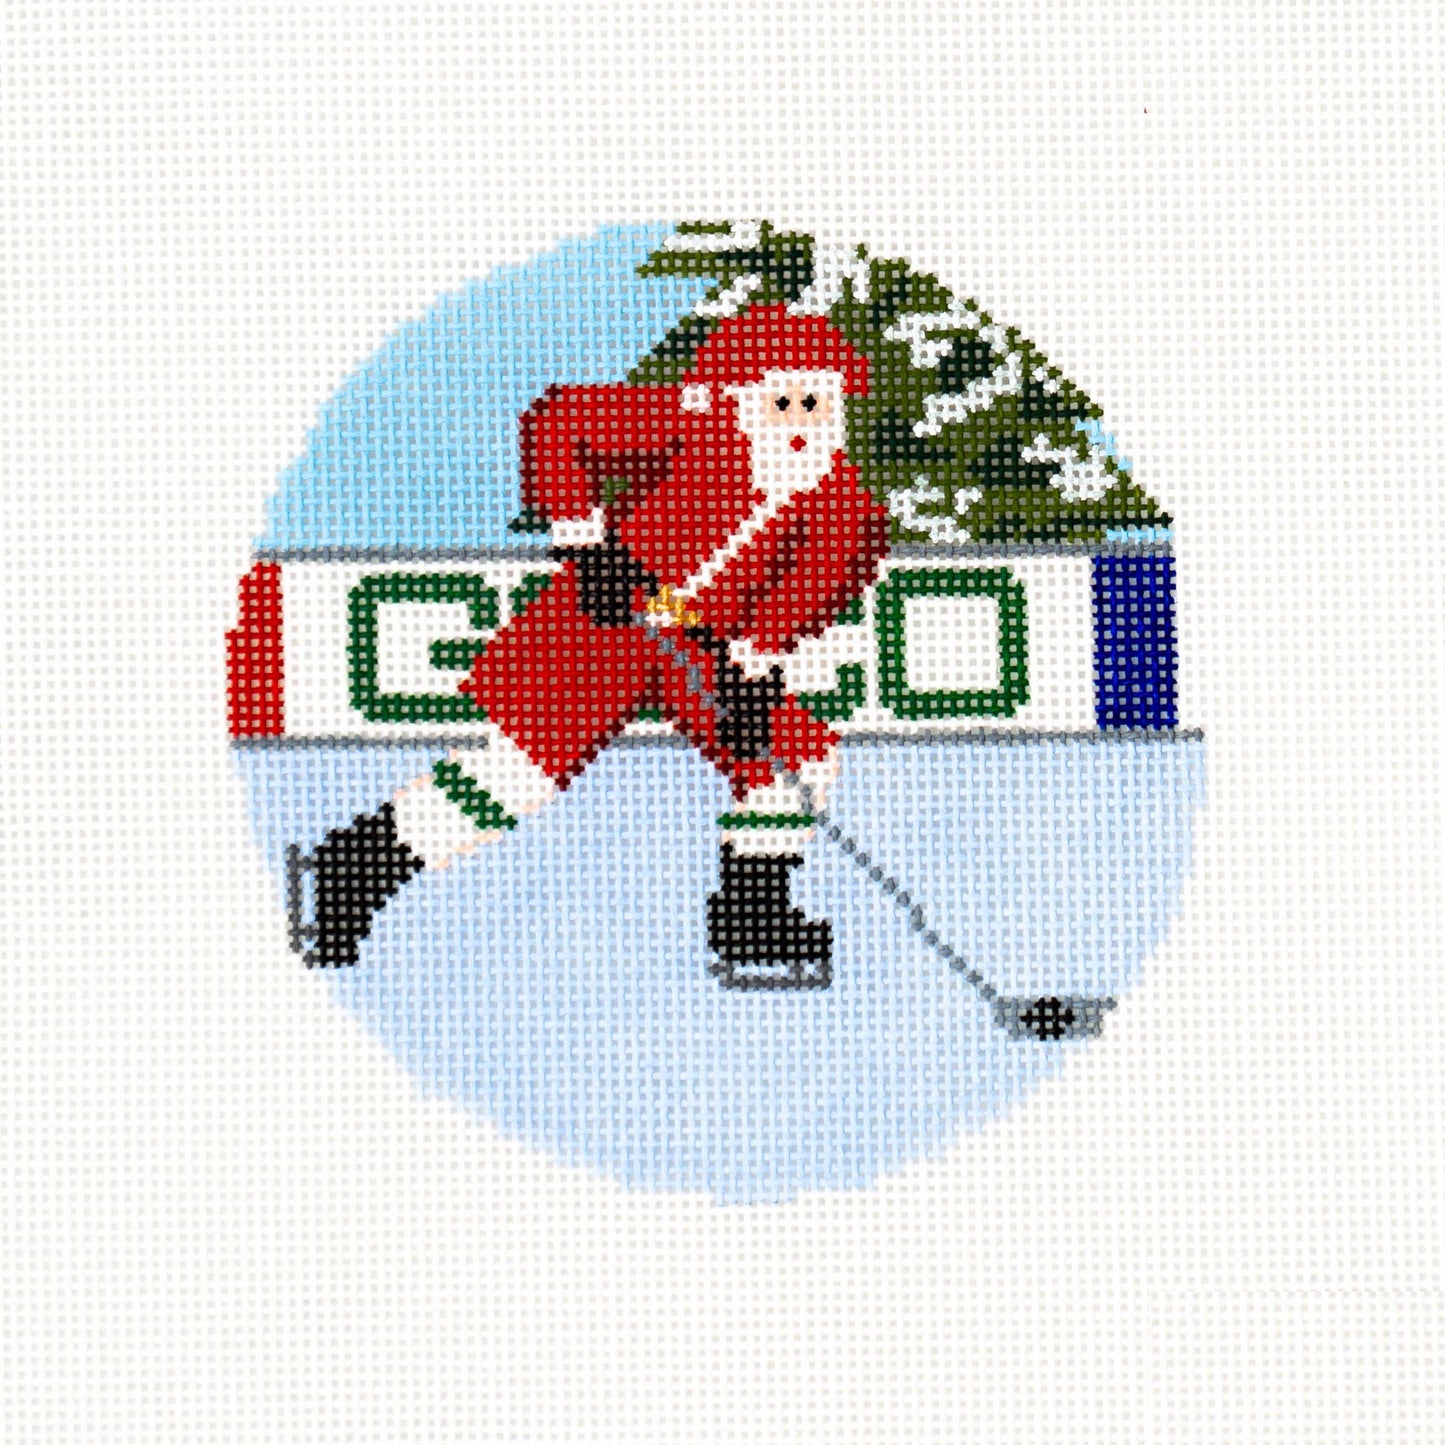 Sporty Santa Ornament - Ice Hockey Santa